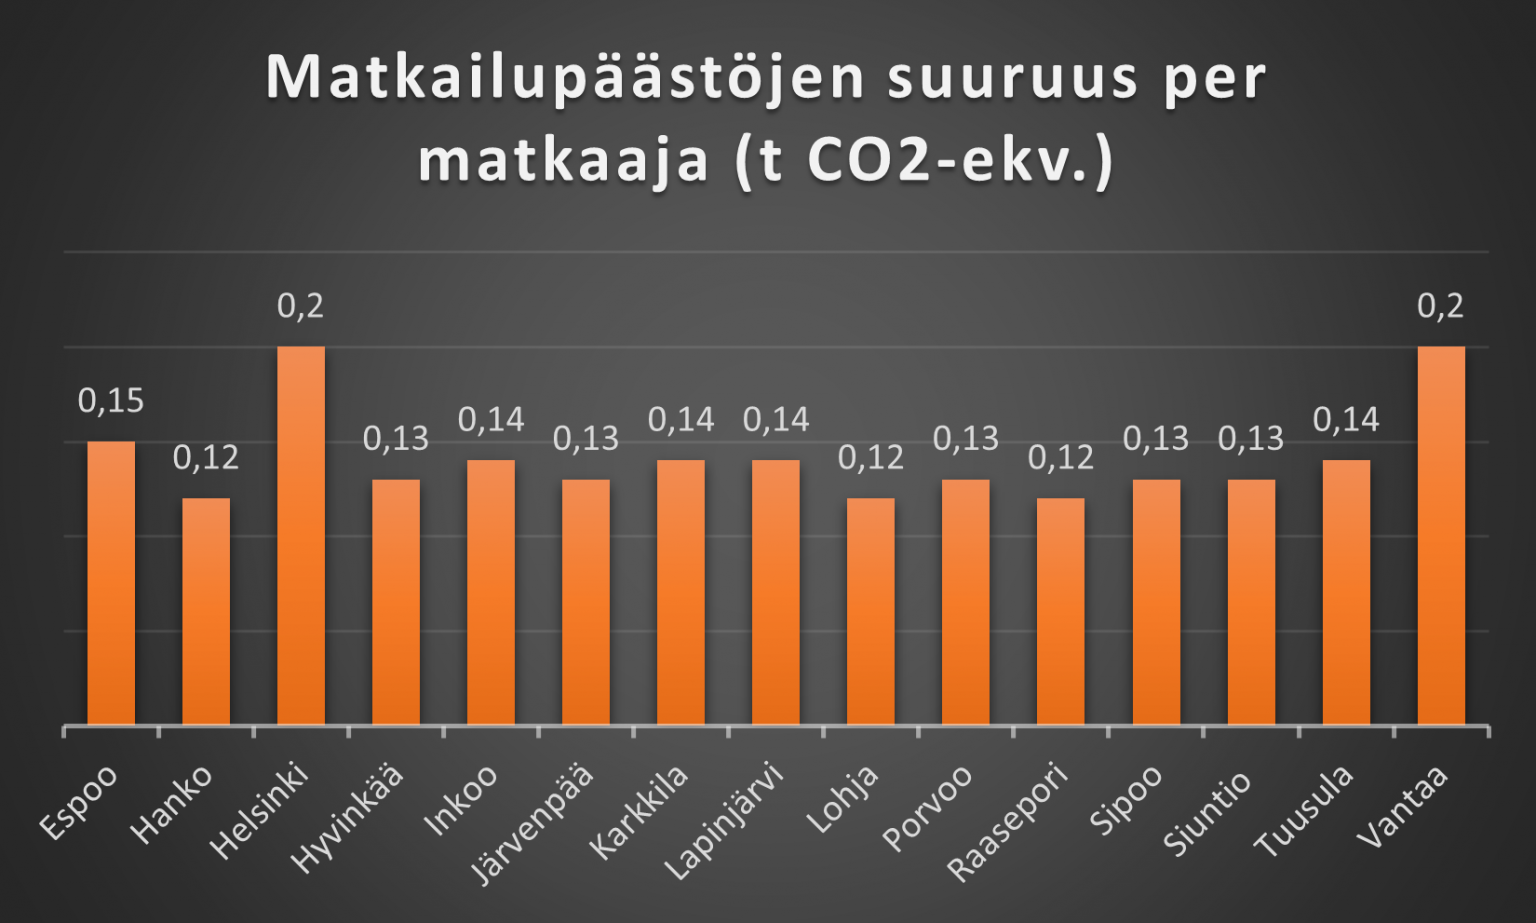 Matkailupäästöjen suuruus per matkaaja (t CO2-ekv.) Uudenmaan 15 kunnassa. Päästöt ovat isoimmat Helsingissä ja Vantaalla (0,2 kummassakin) ja pienimmät Hangossa, Lohjalla ja Raaseporissa (0,12 kussakin).